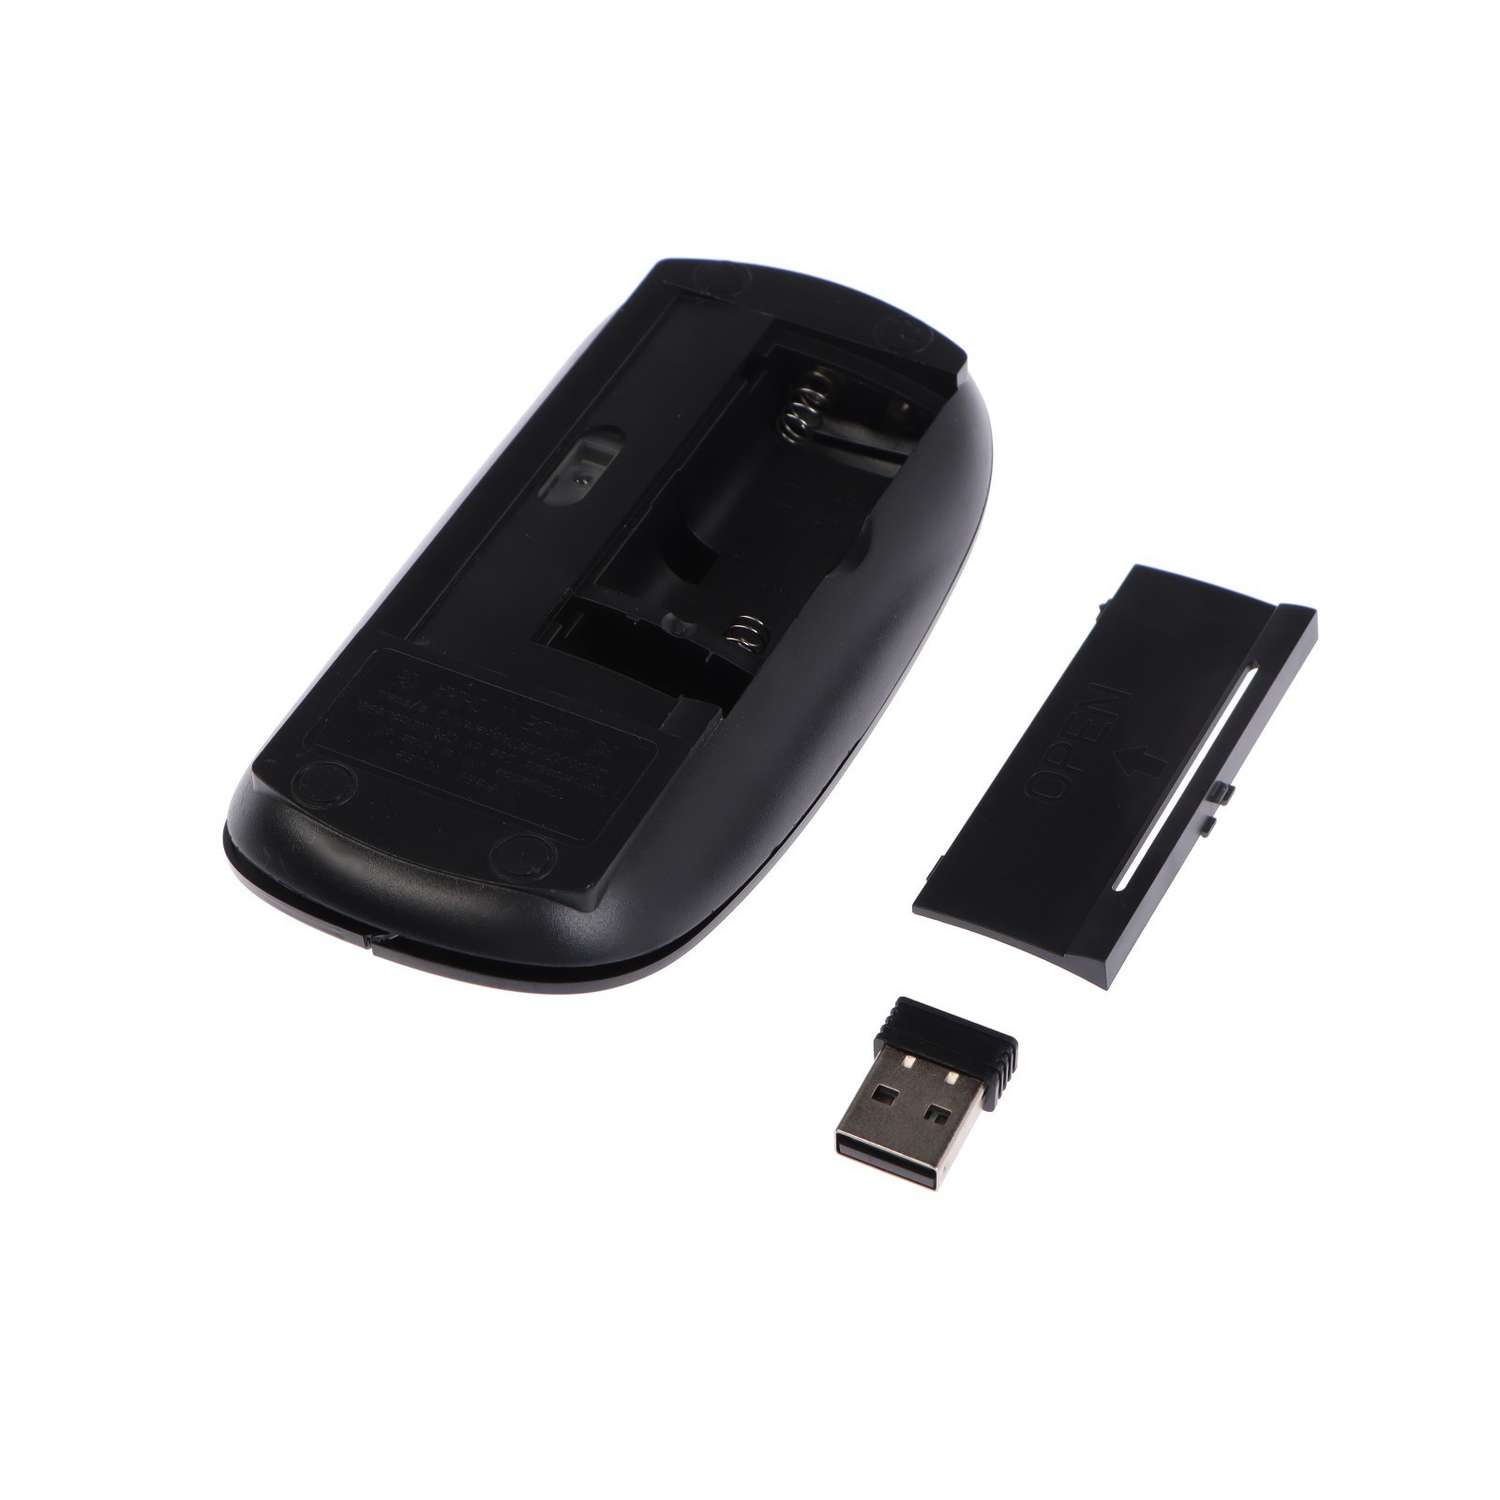 Мышь Luazon MB-1.0 беспроводная оптическая 1600 dpi USB Чёрная - фото 3